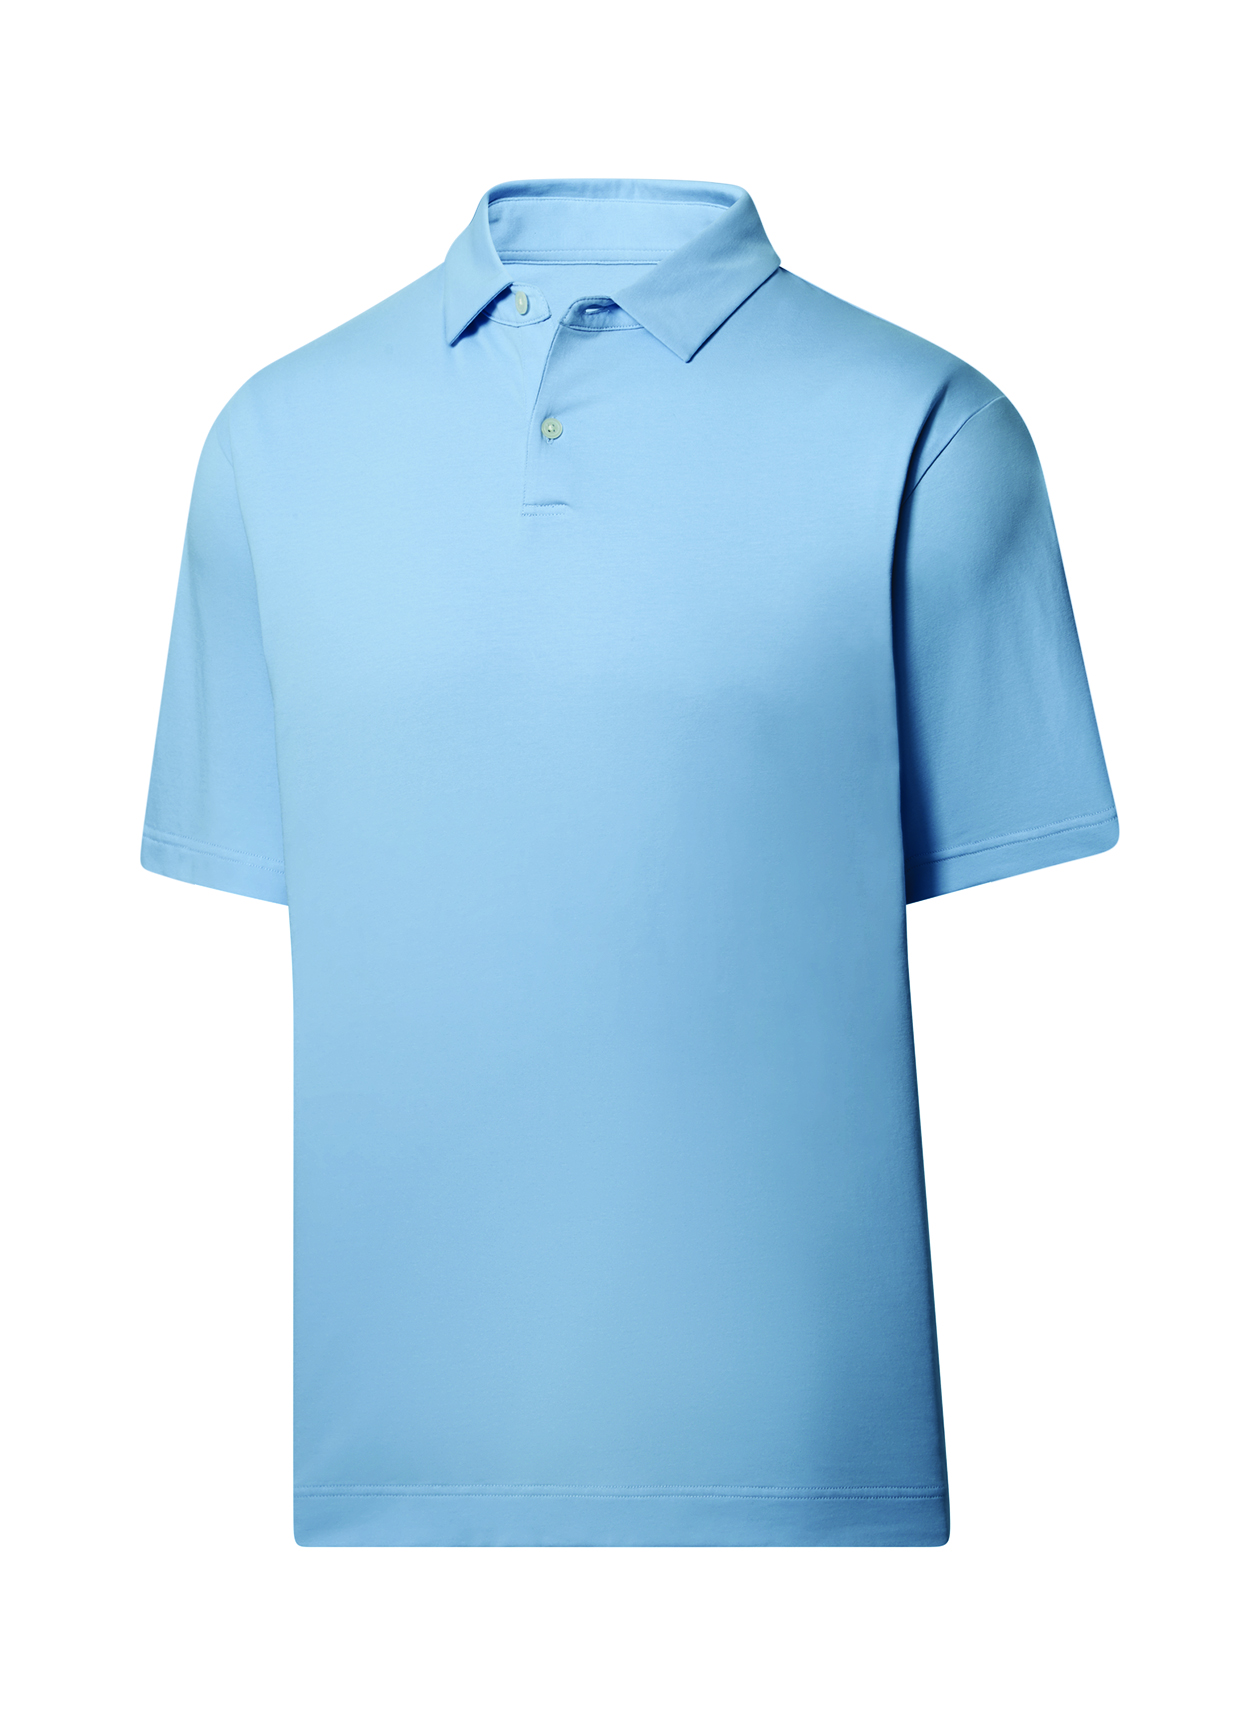 FootJoy Men's Blue Haze drirelease Solid Jersey Polo